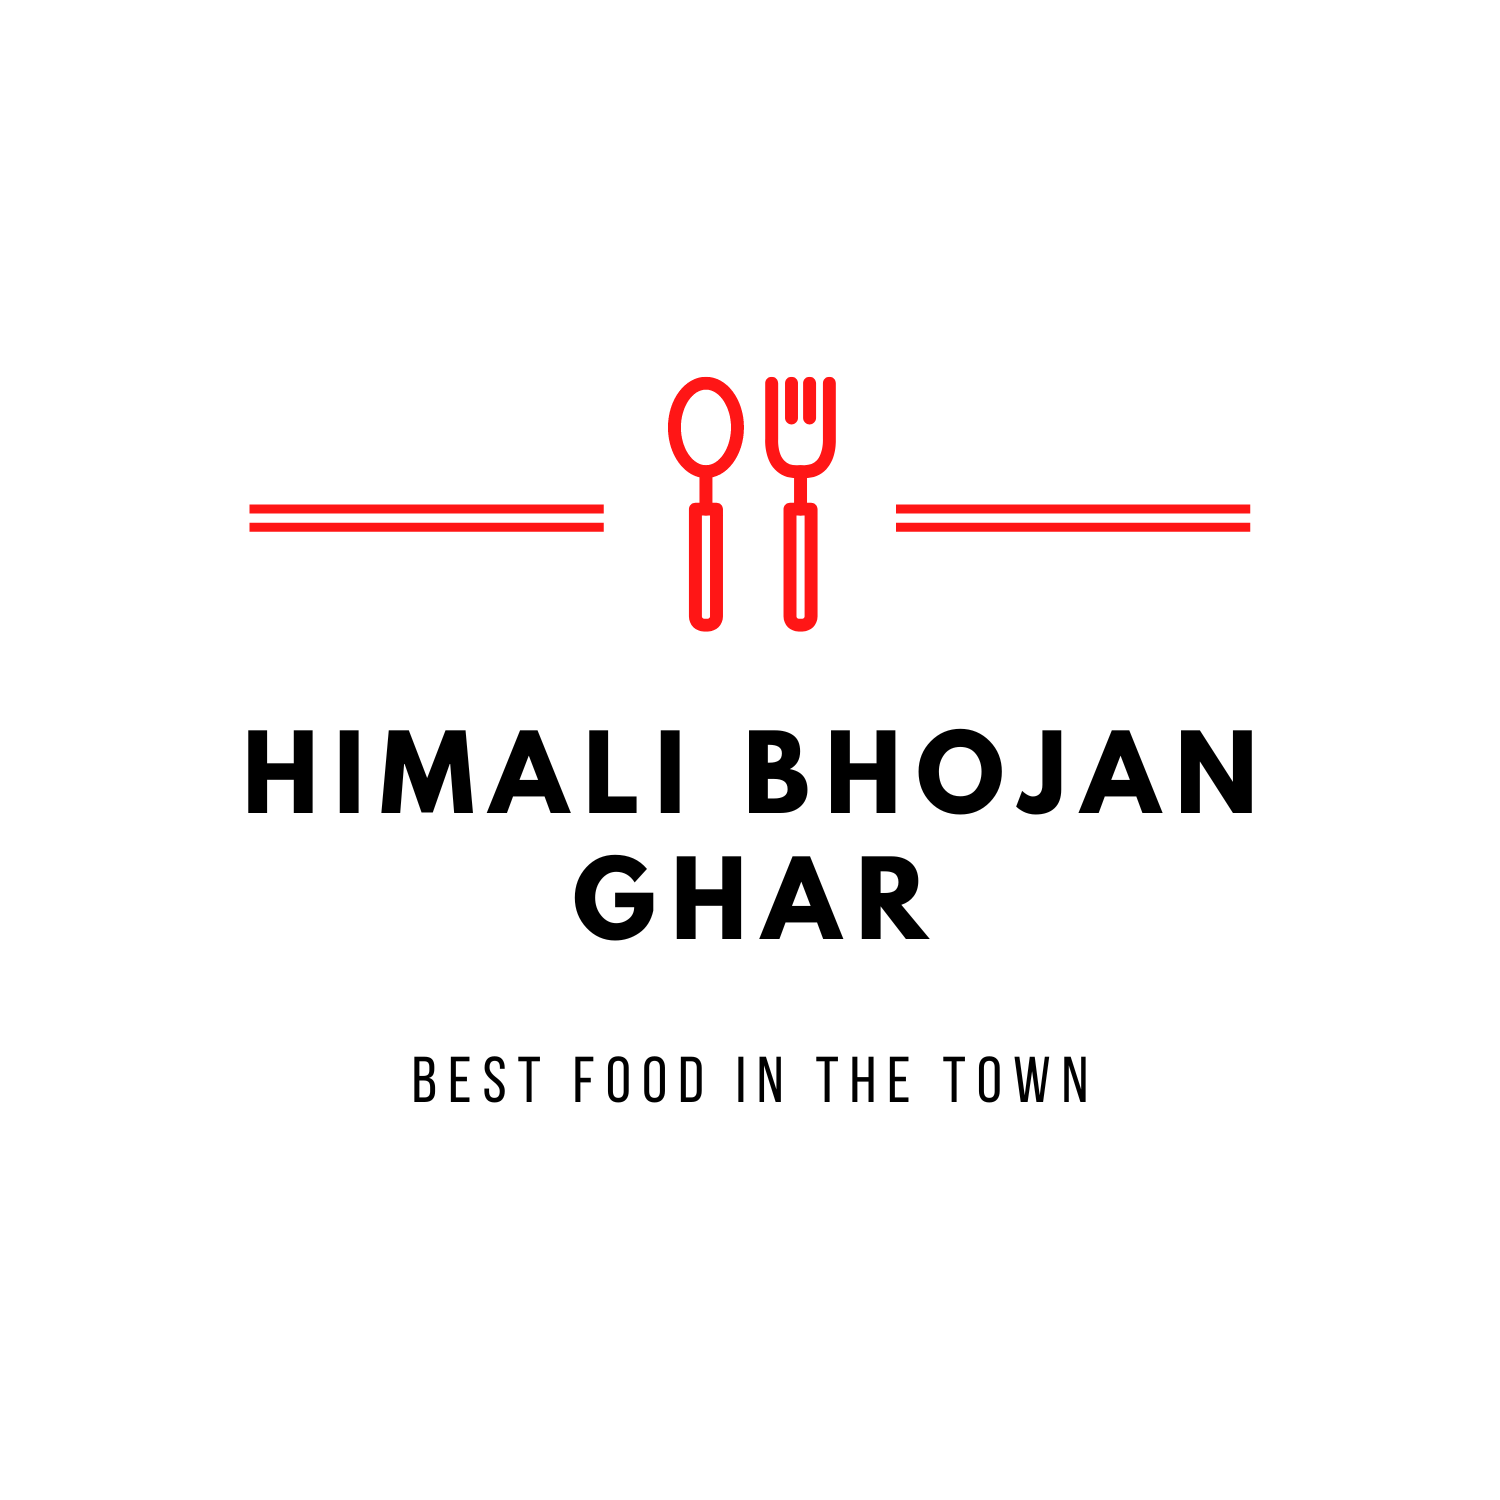 Himali Bhojan Ghar